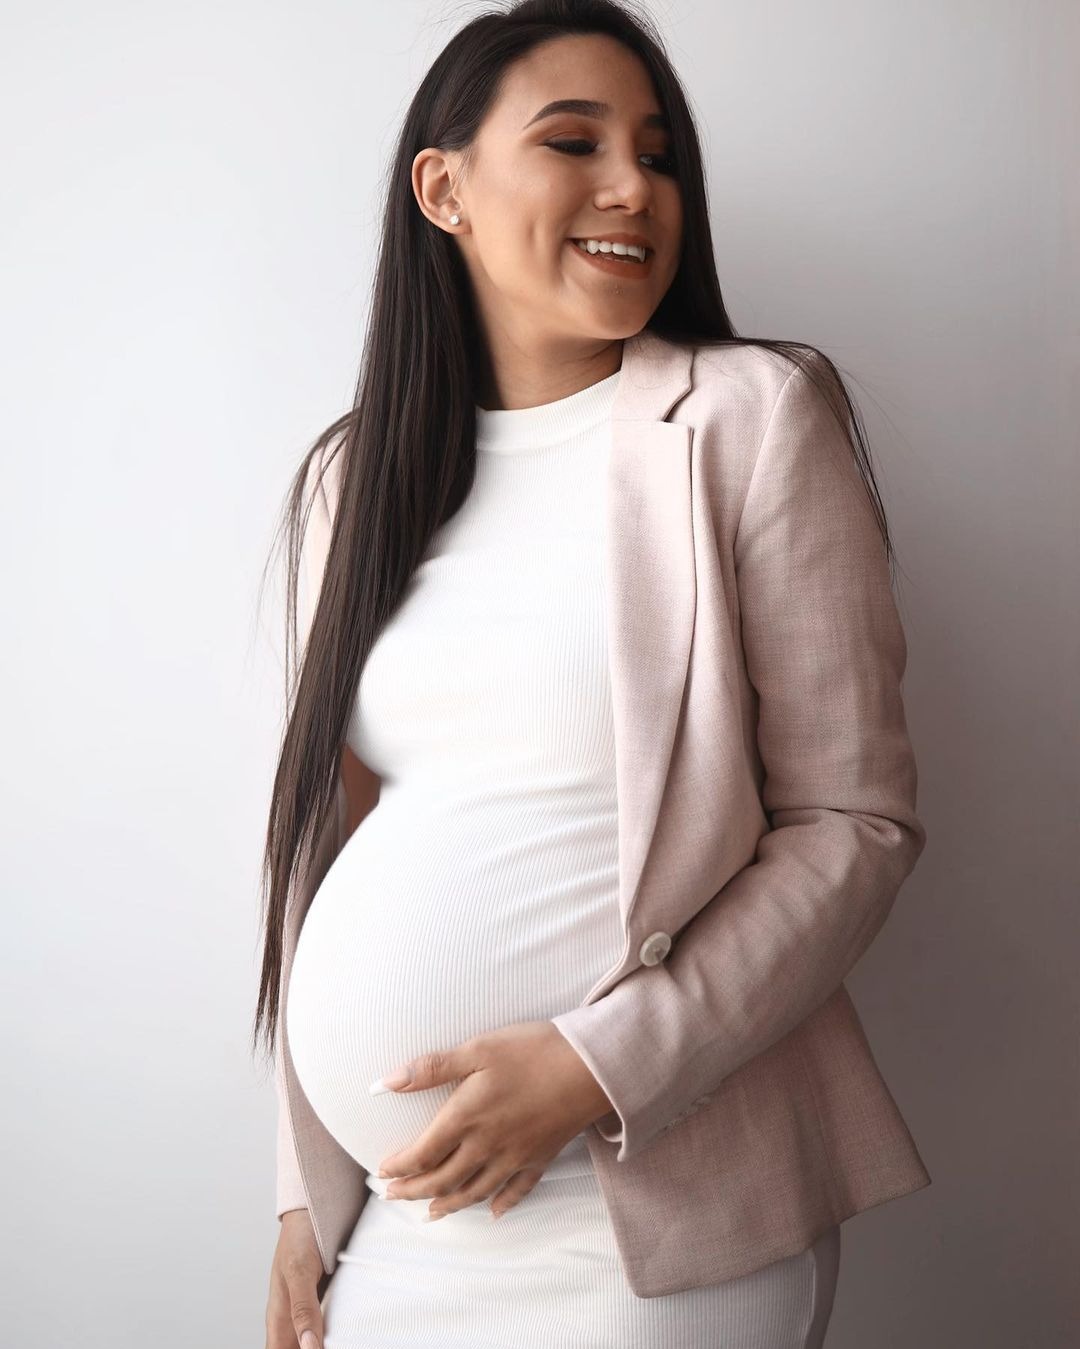 Bryan Torres reafirmó que Samahara Lobatón está embarazada/Foto: Instagram